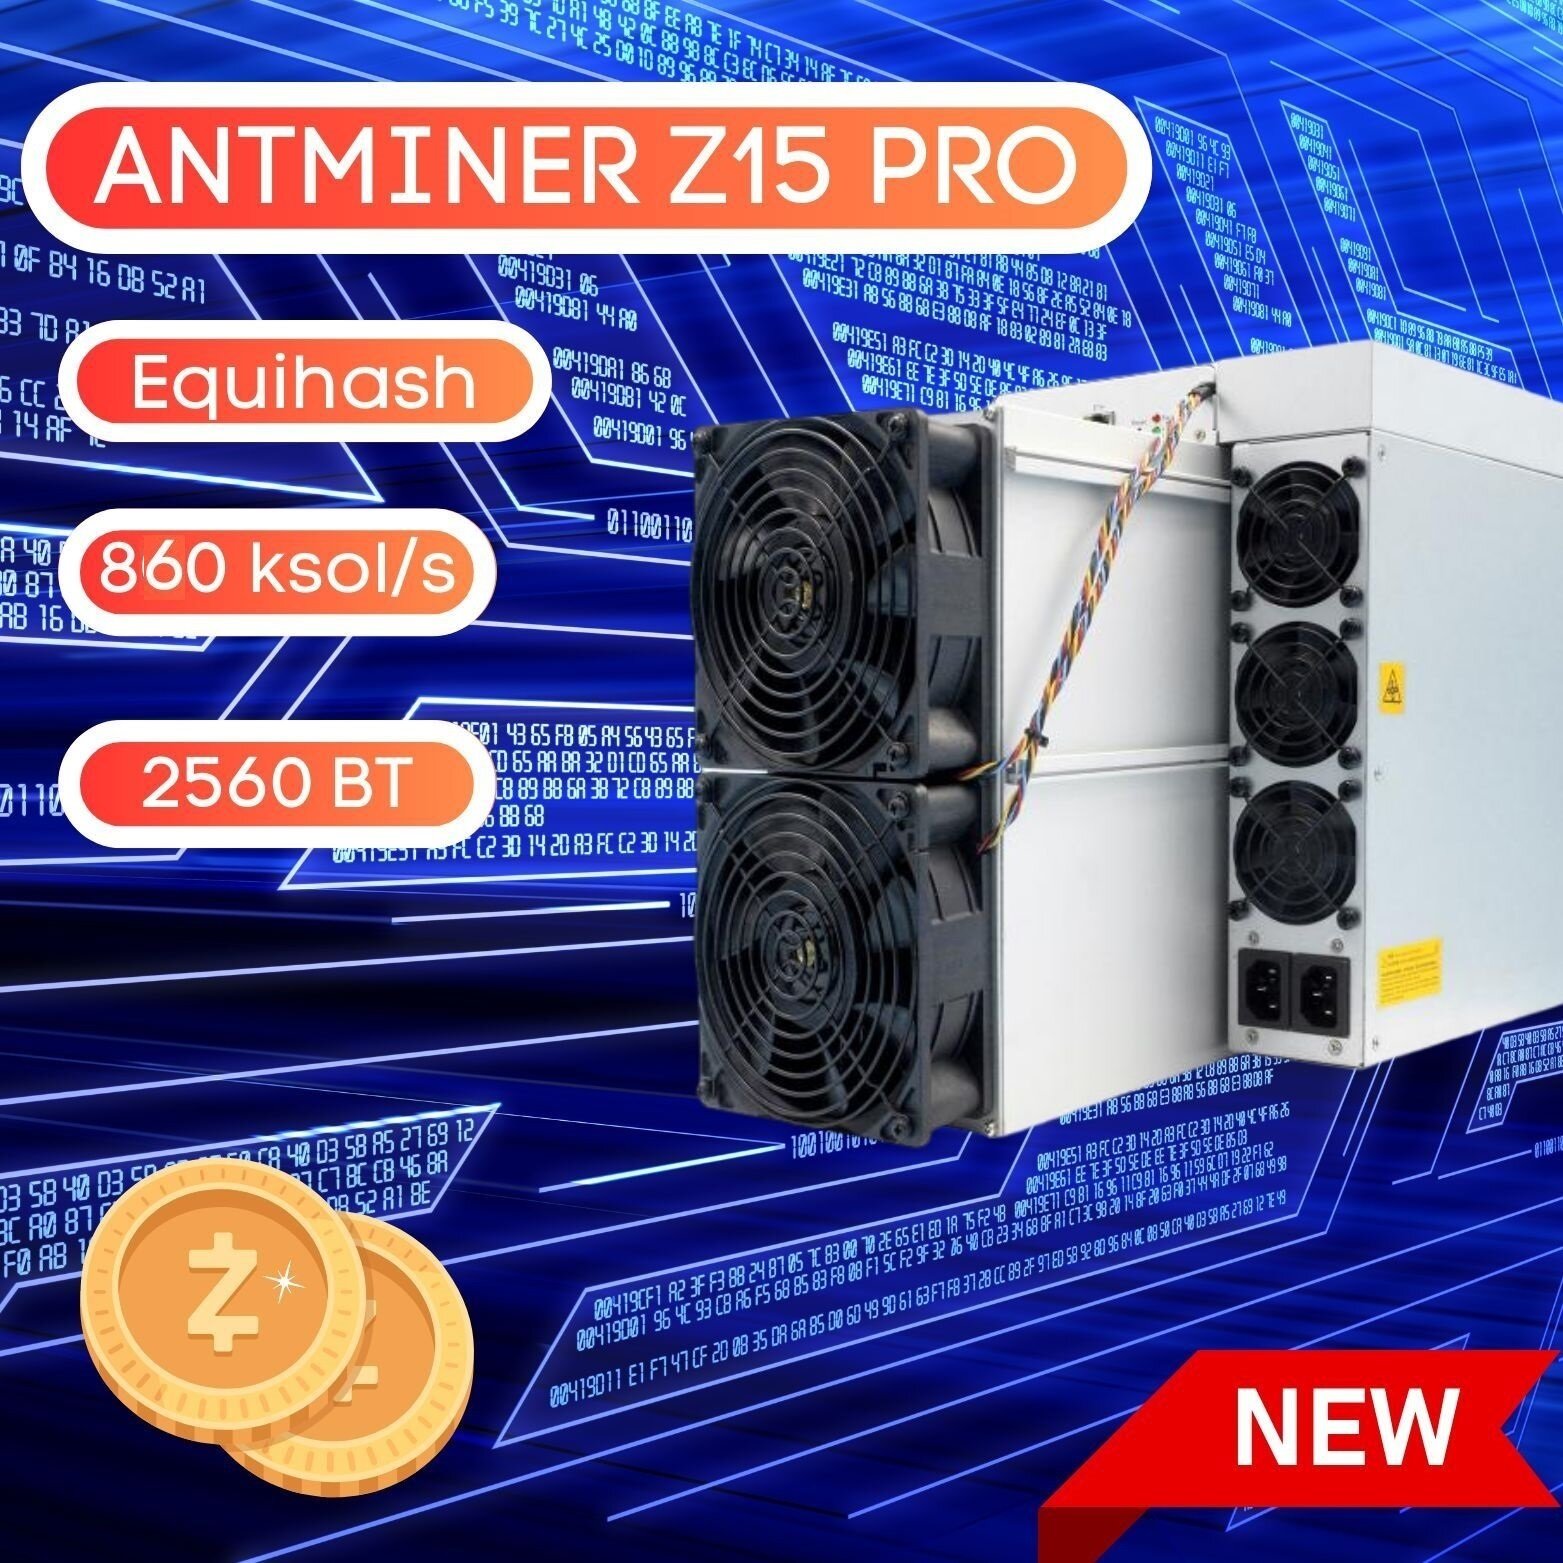 ASIC Майнер BITMAIN ANTMINER Z15 PRO 860 KSol/s